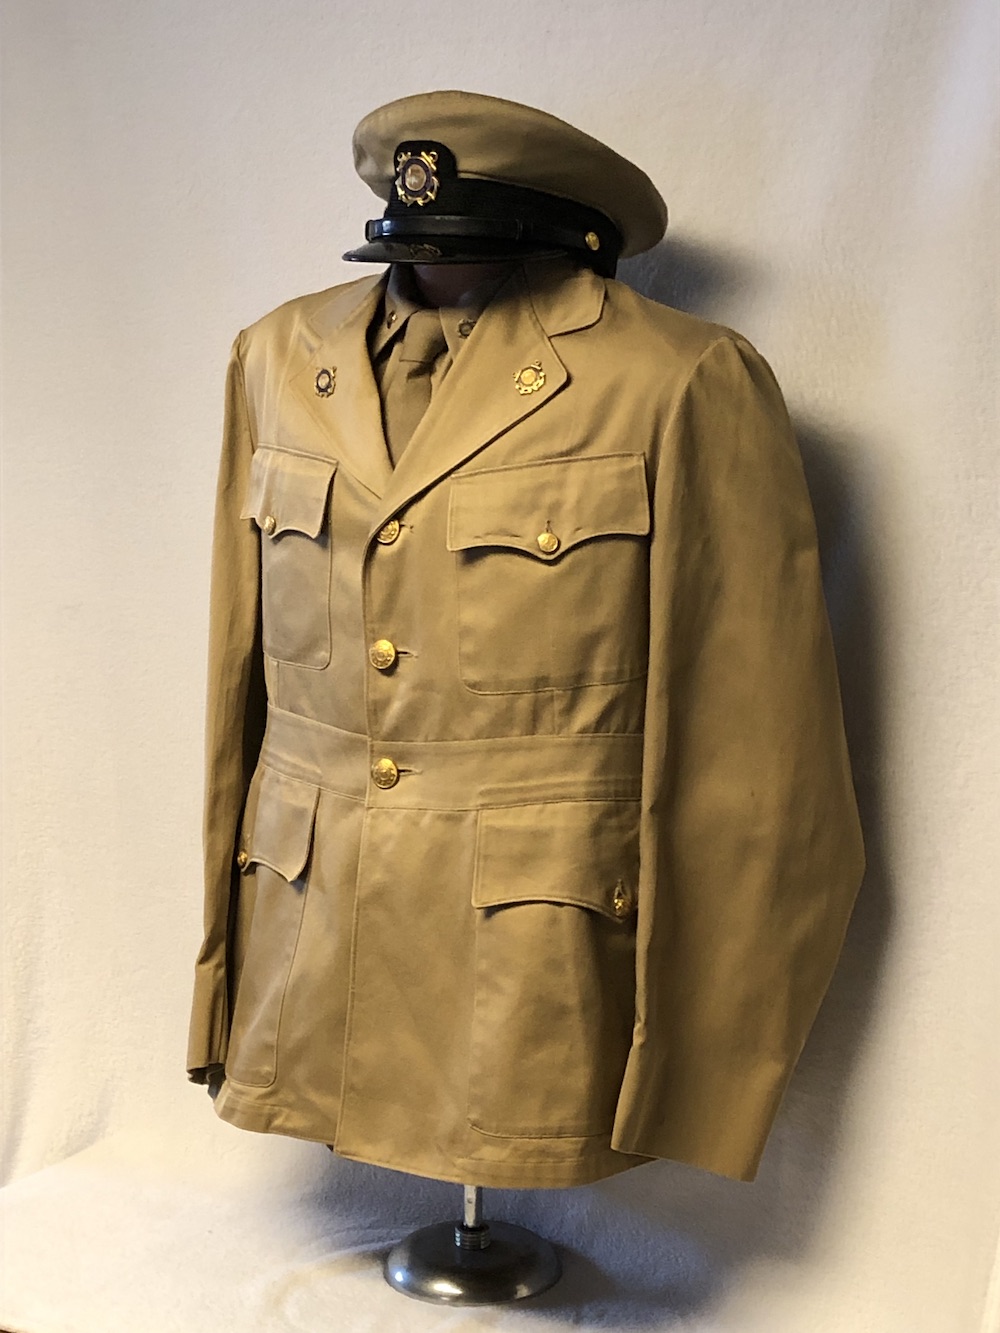 USCG Aux Dress Khaki 1950 Left side view